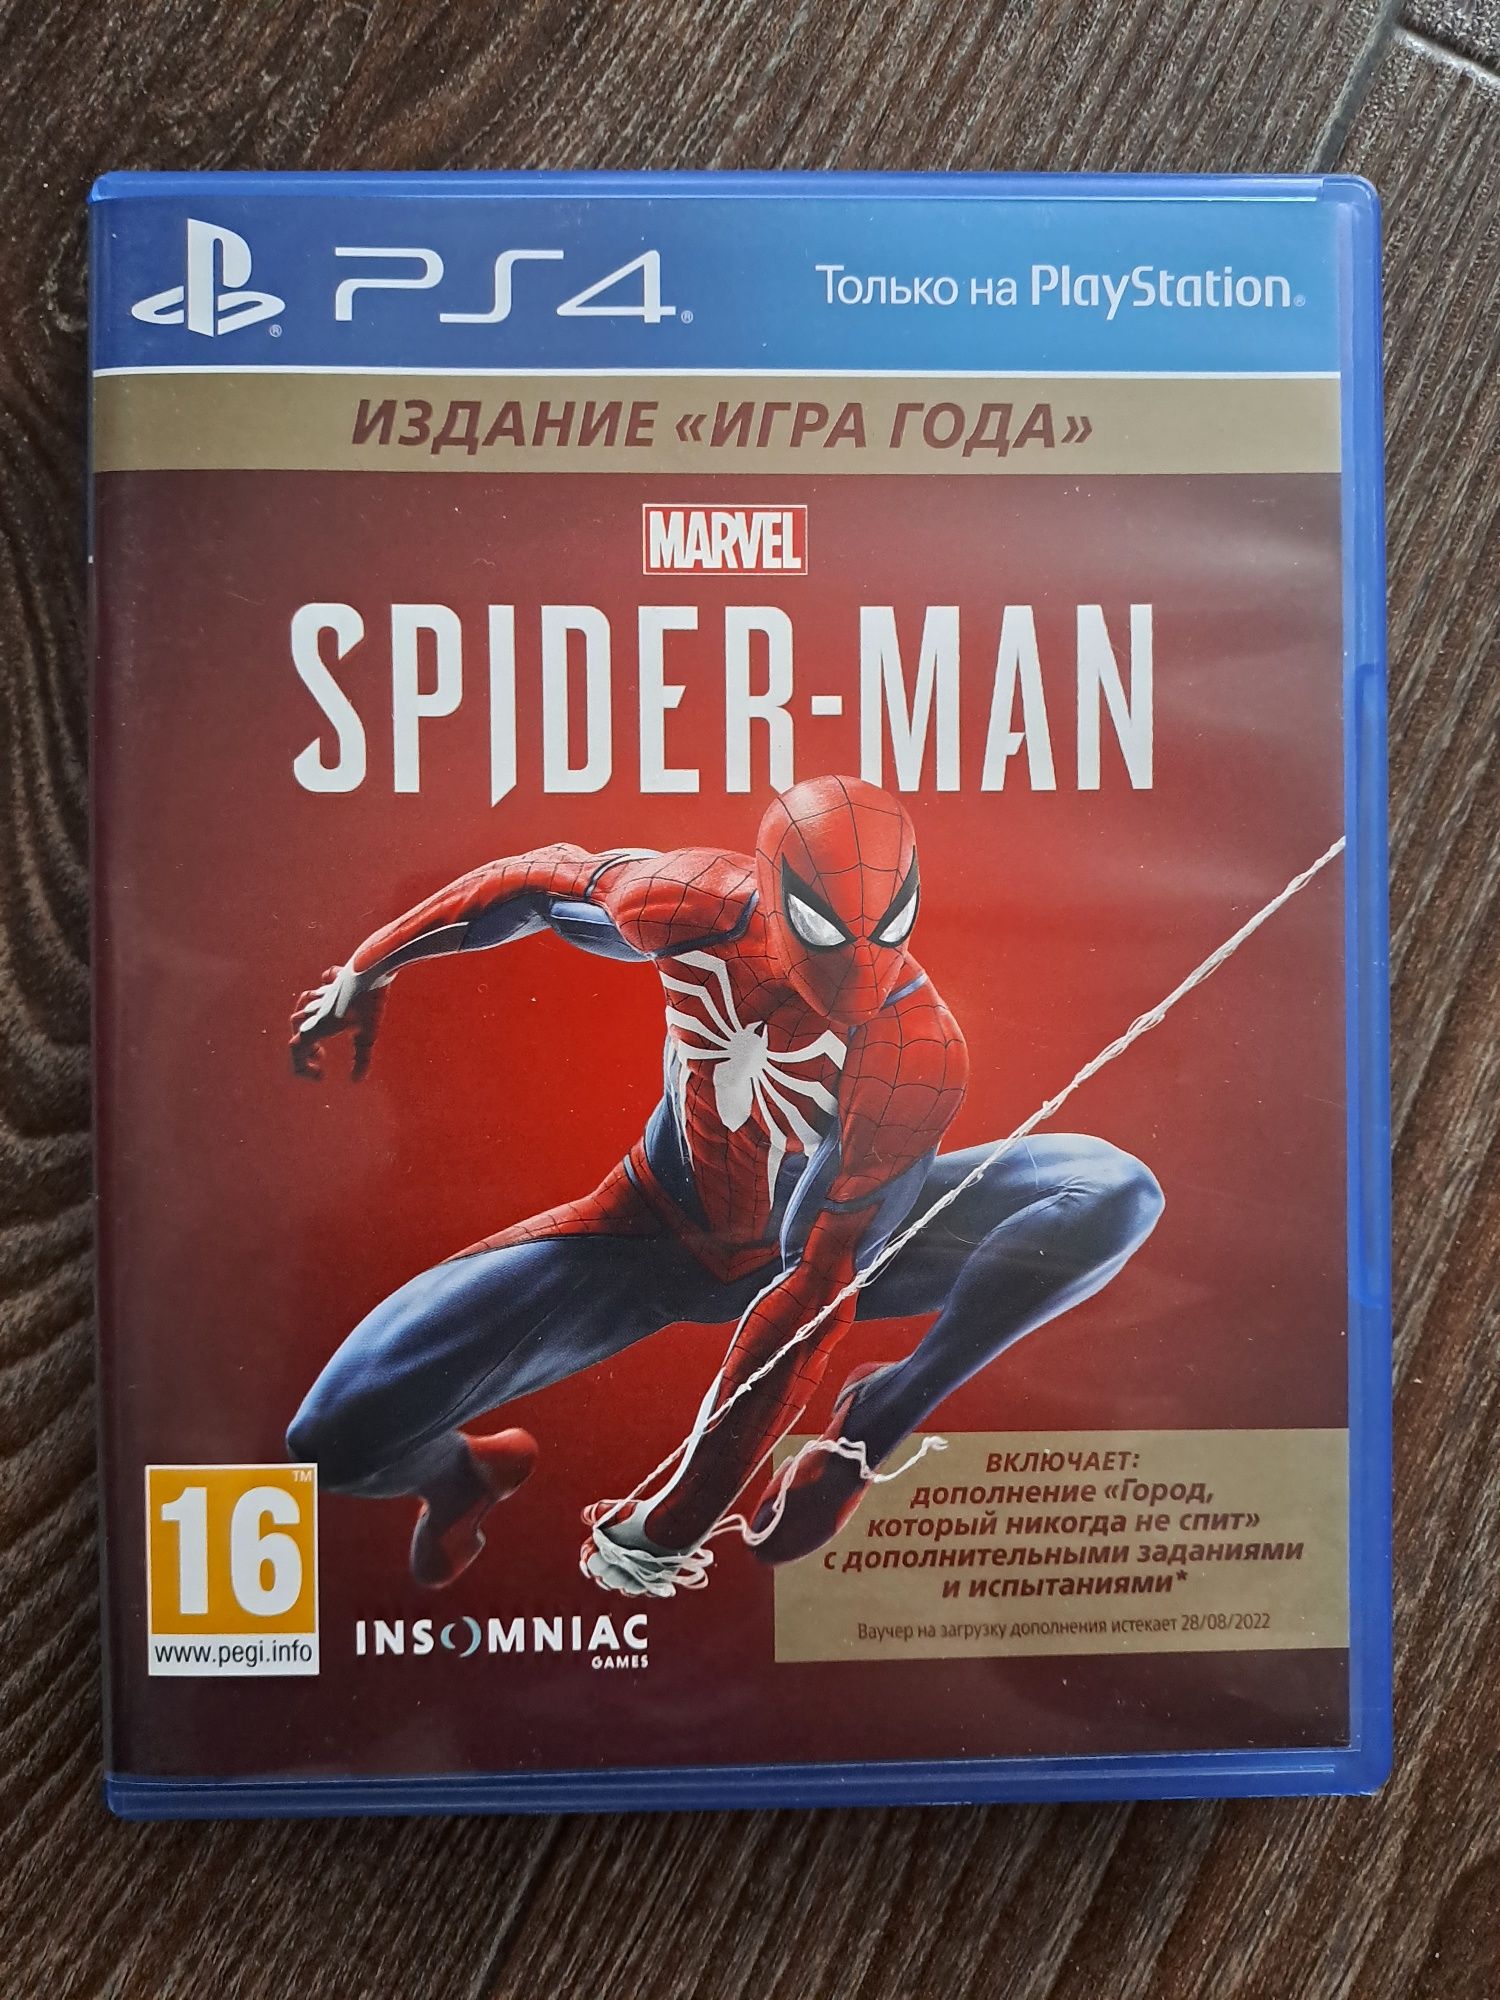 Ps4 Spider man Marvel